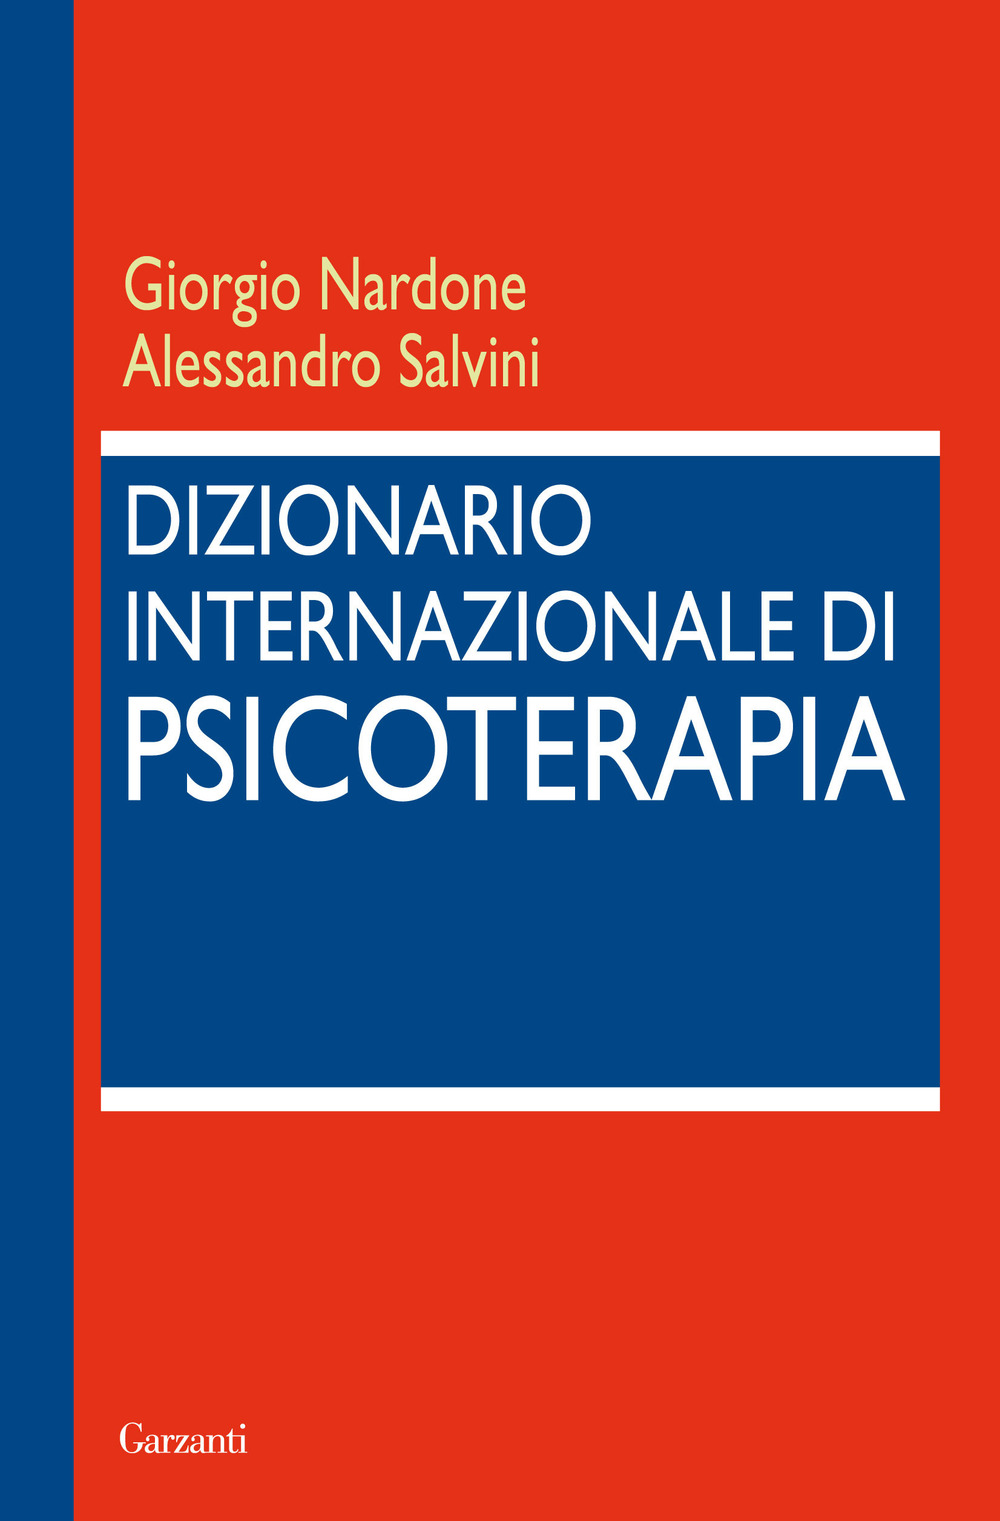 Image of Dizionario internazionale di psicoterapia